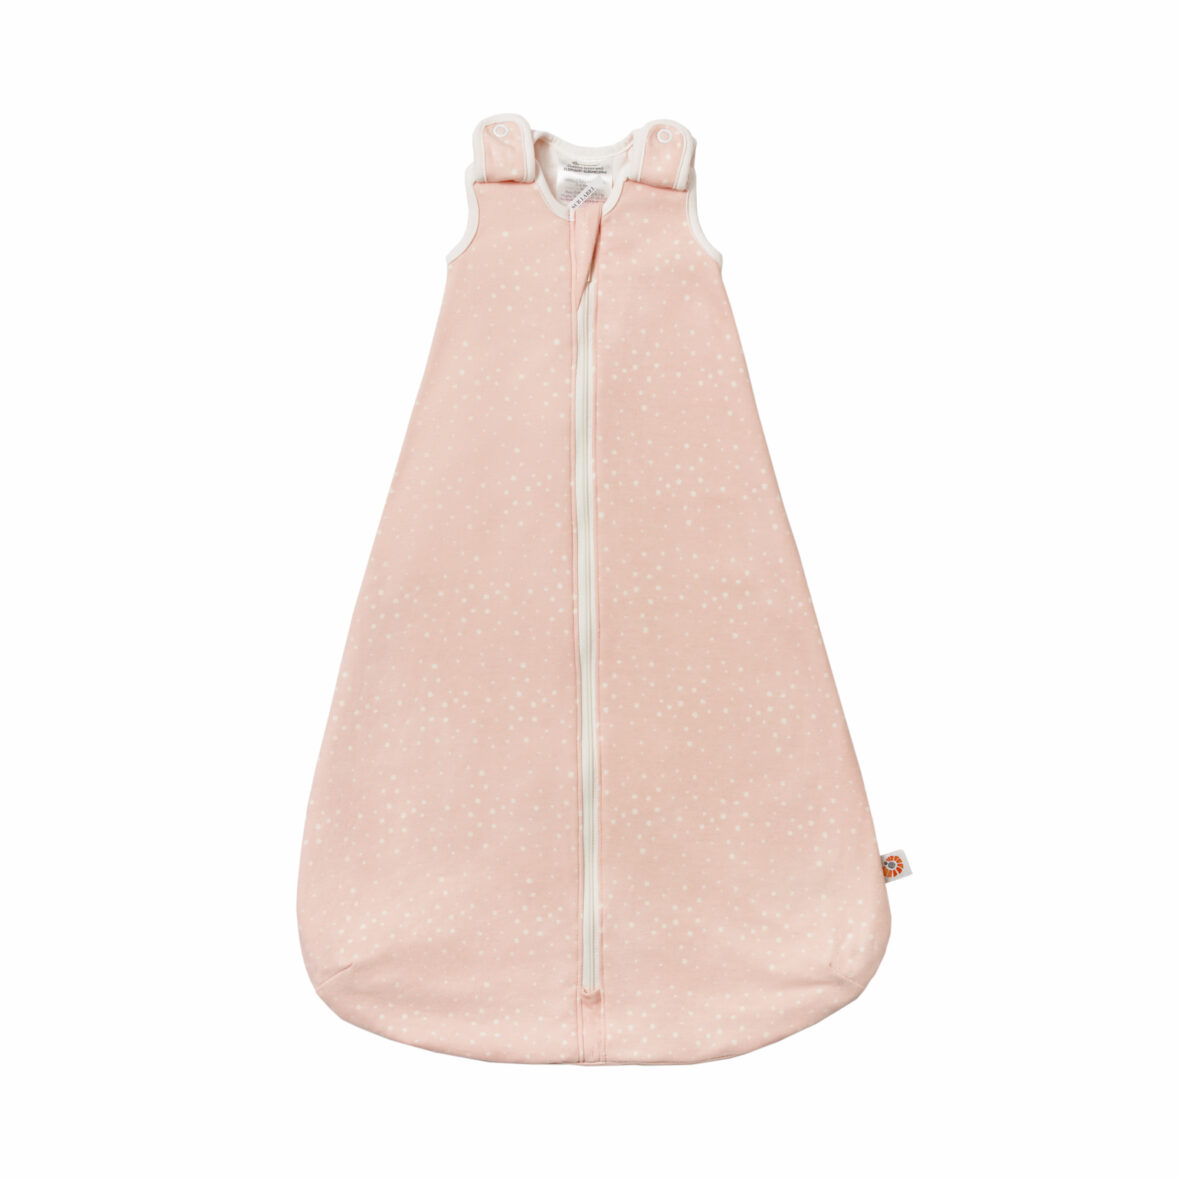 Ergobaby Saco de dormir Clássico 0-6m Tog 2,5 – Pink Sand